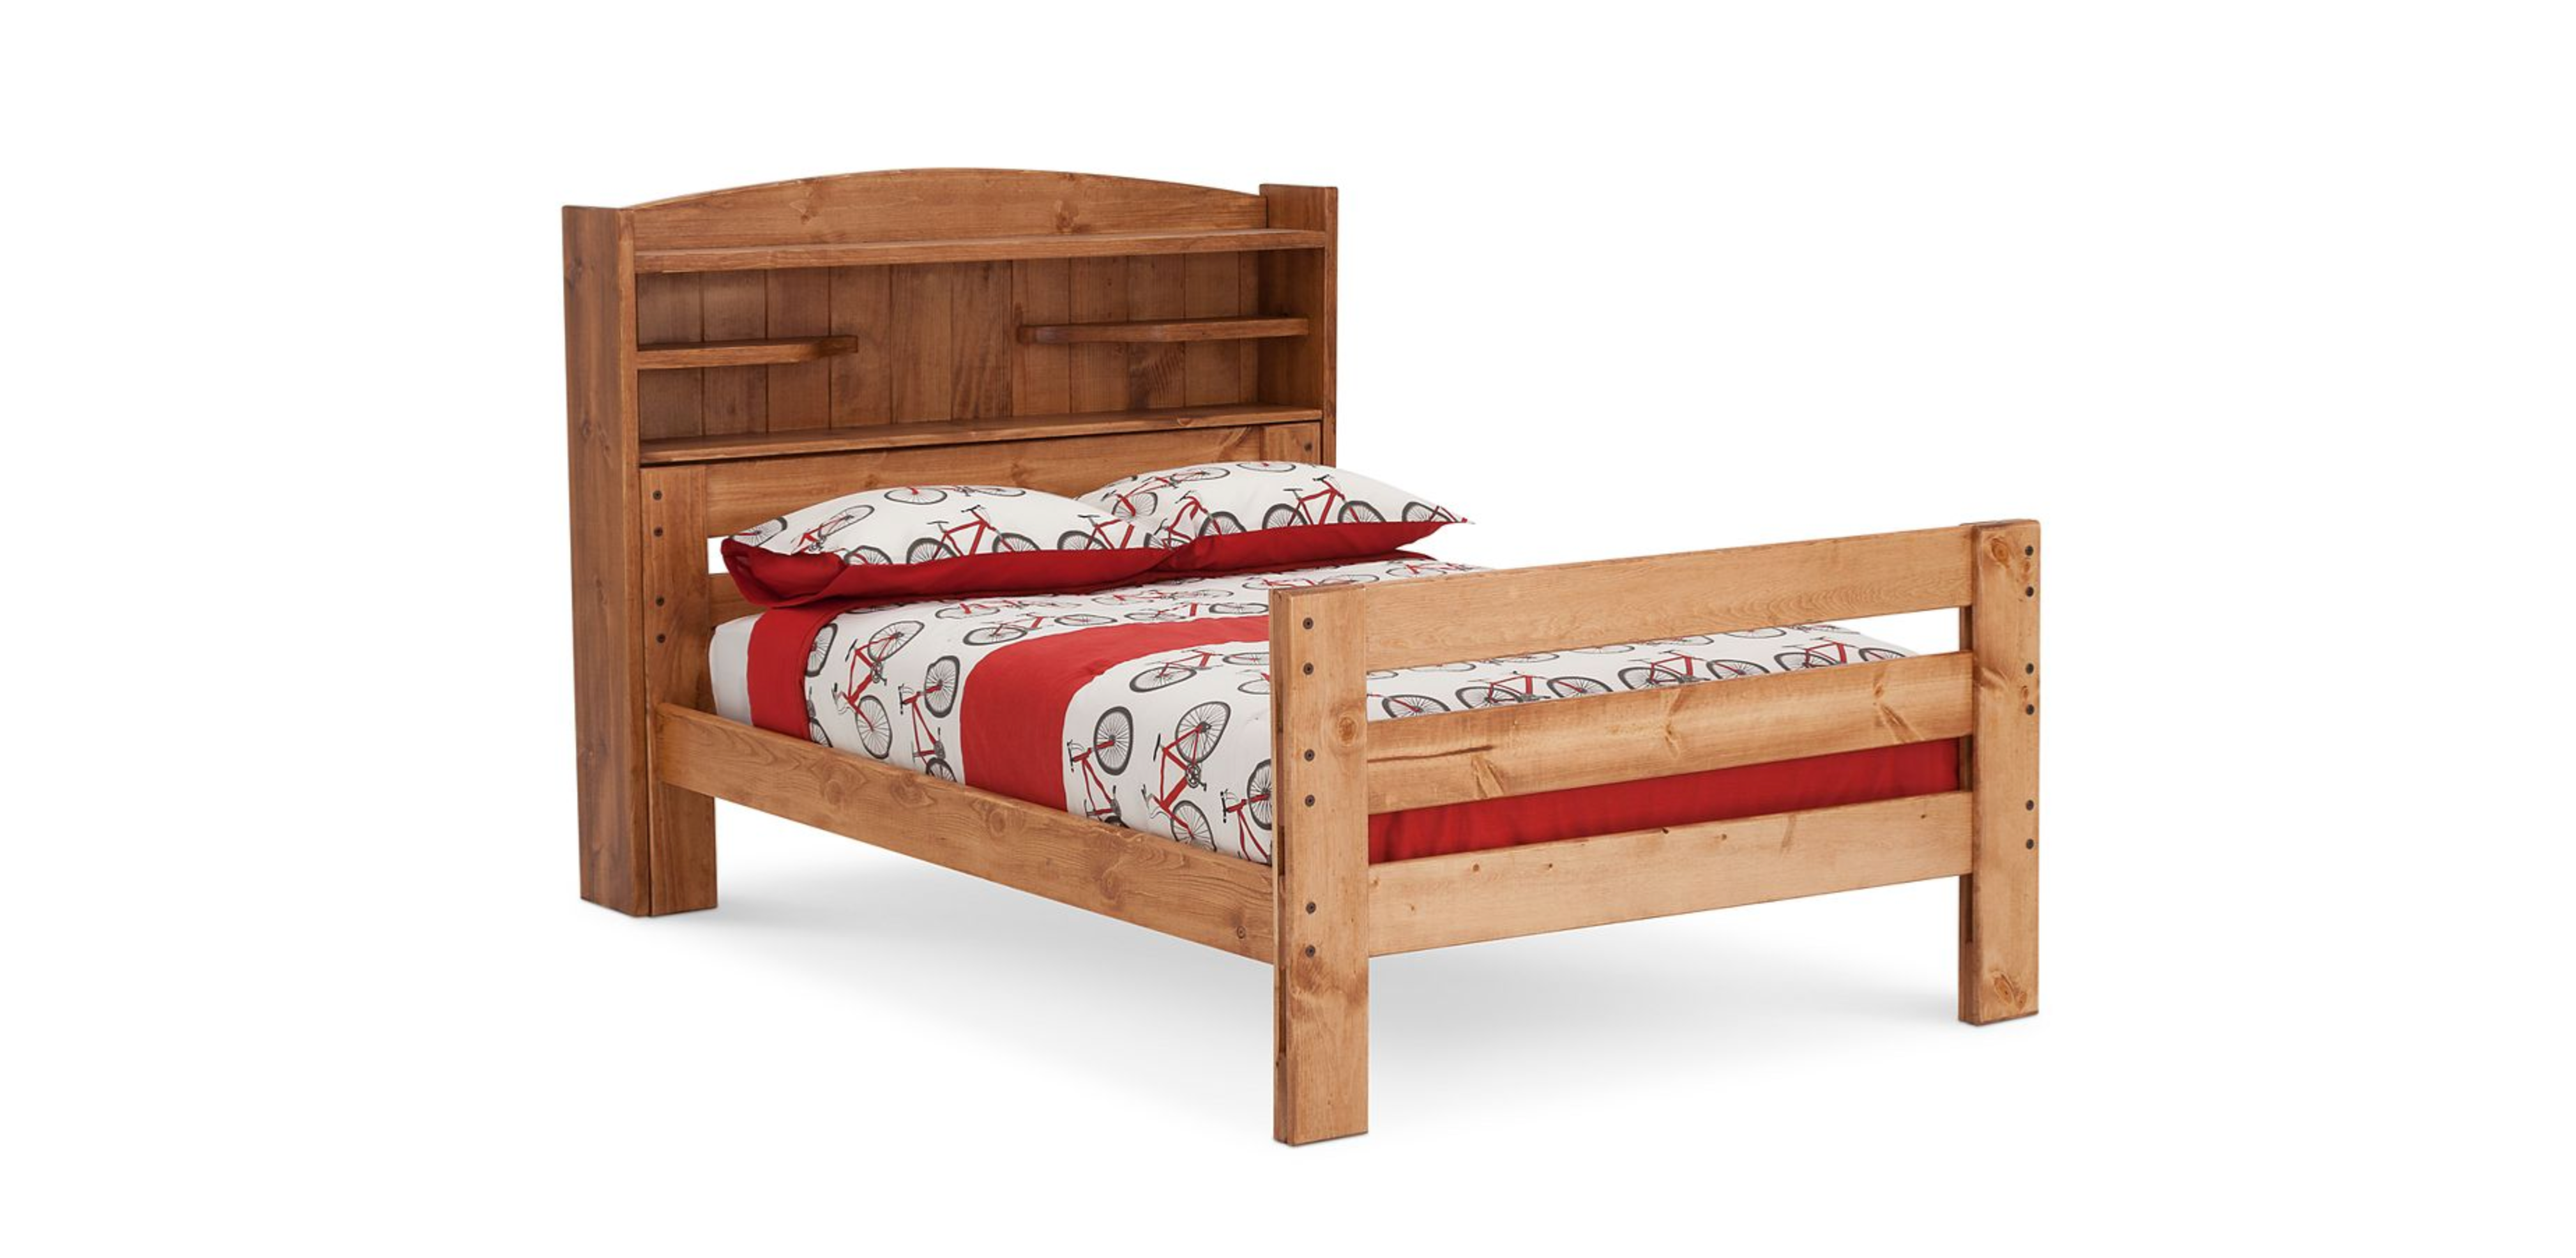 Durango Bookcase Bed in Full Size - M&J Design Furniture 